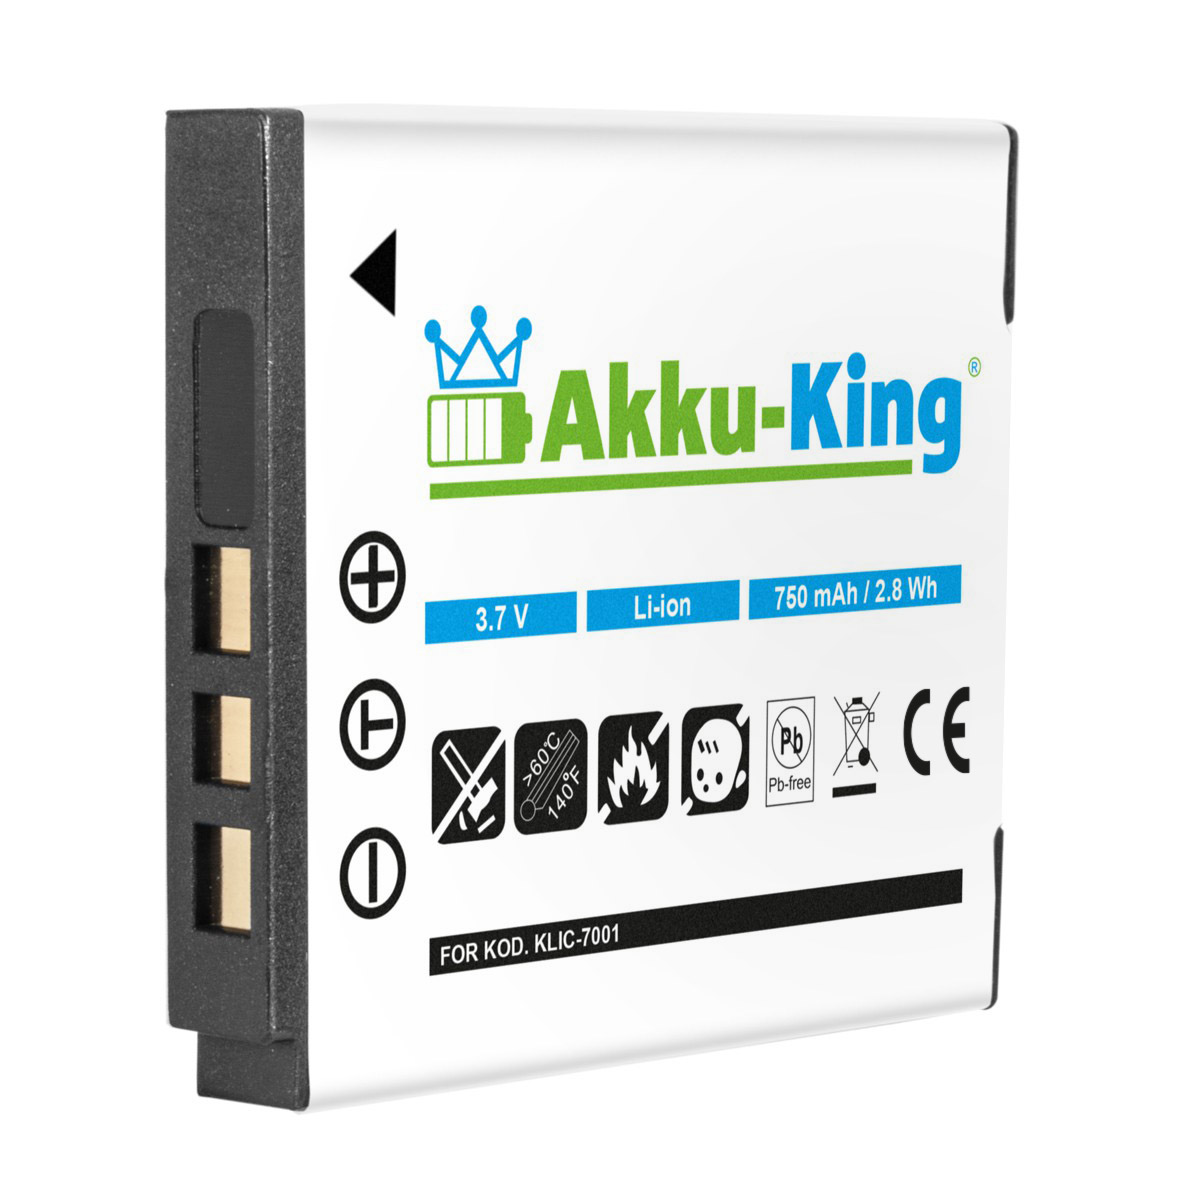 Li-Ion 3.7 AKKU-KING Kamera-Akku, Volt, Klic-7001 750mAh kompatibel mit Kodak Akku